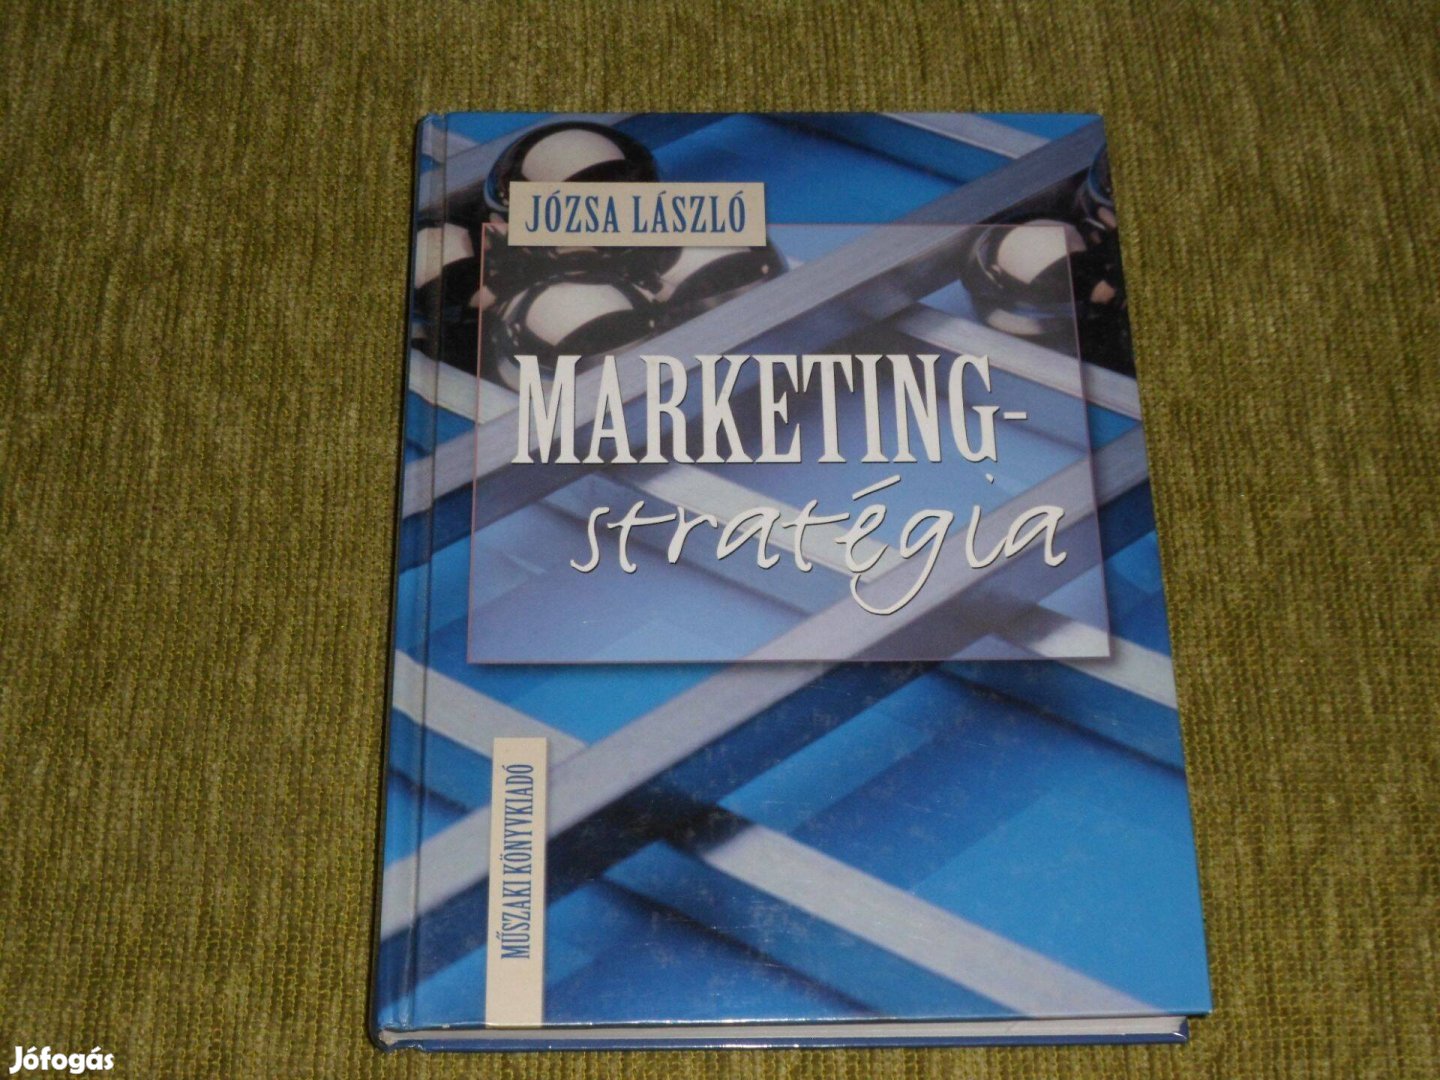 Józsa László: Marketingstratégia - Műszaki Könyvkiadó, 2000